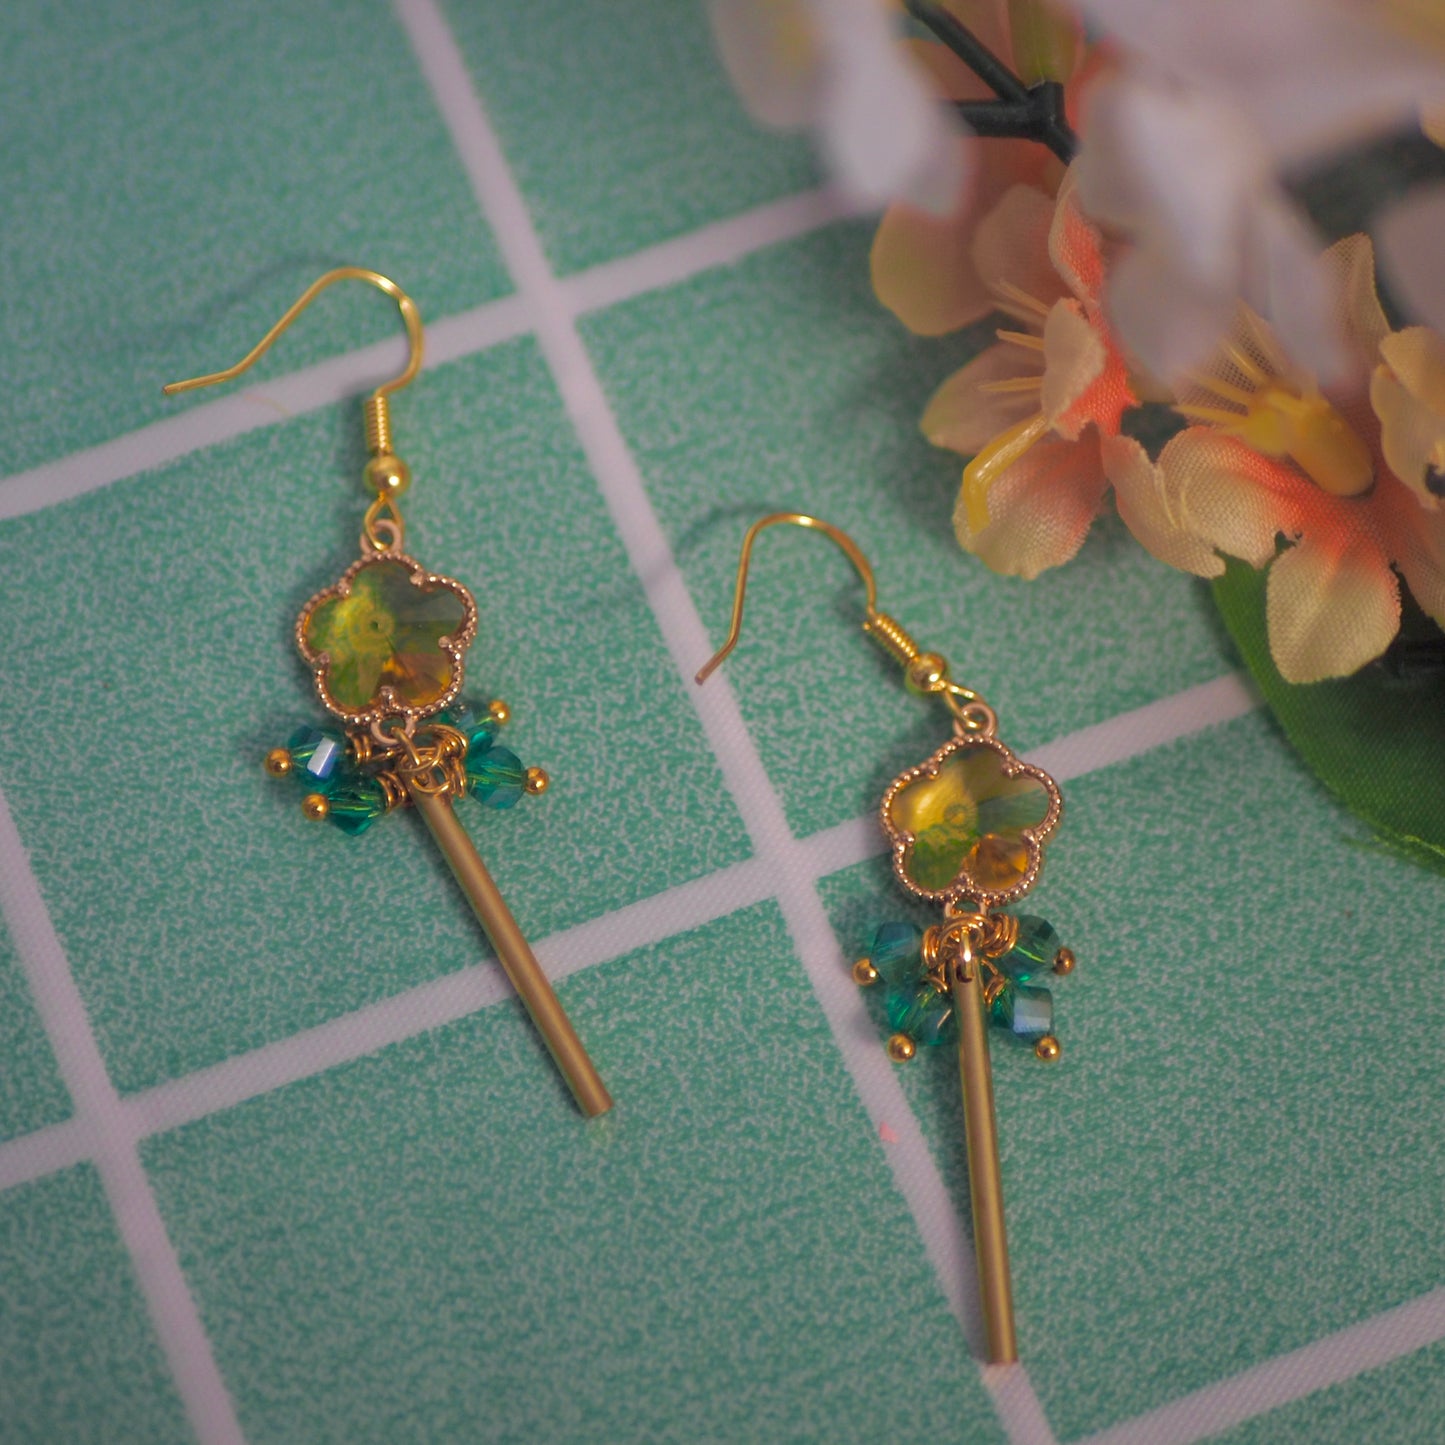 Twilight Flower Earrings, SxF anime inspired earrings